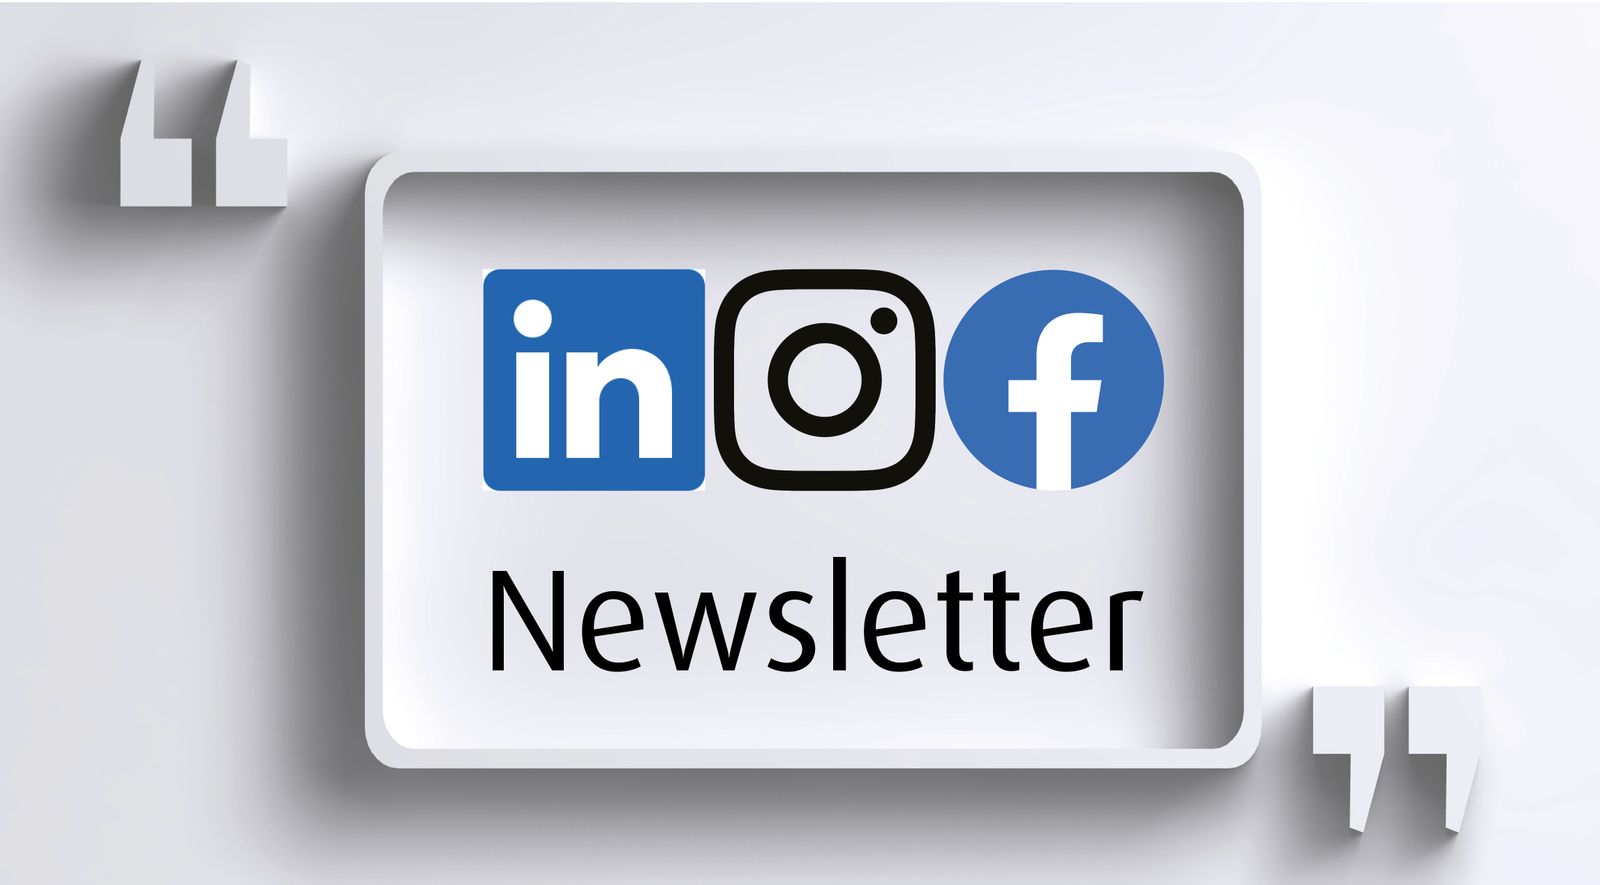 NEU! Social Media und Newsletter: Liken, folgen oder abonnieren Sie Publicare